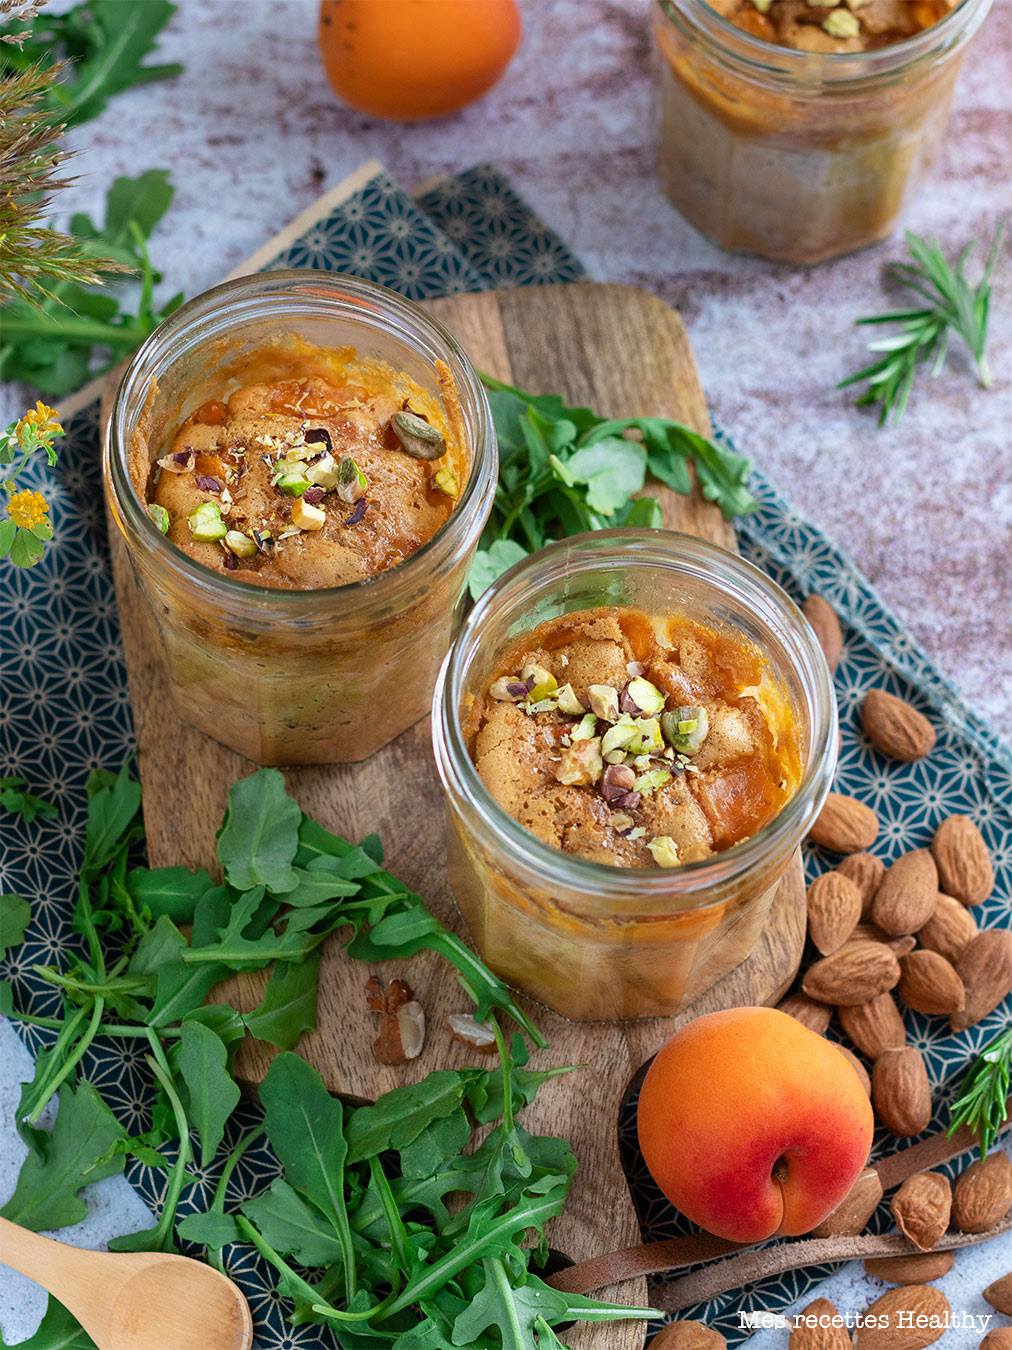 recette healthy-clafoutis aux abricots-fruit-lait d'avoine-fruits-Clafoutis aux abricots cuit dans son bocal